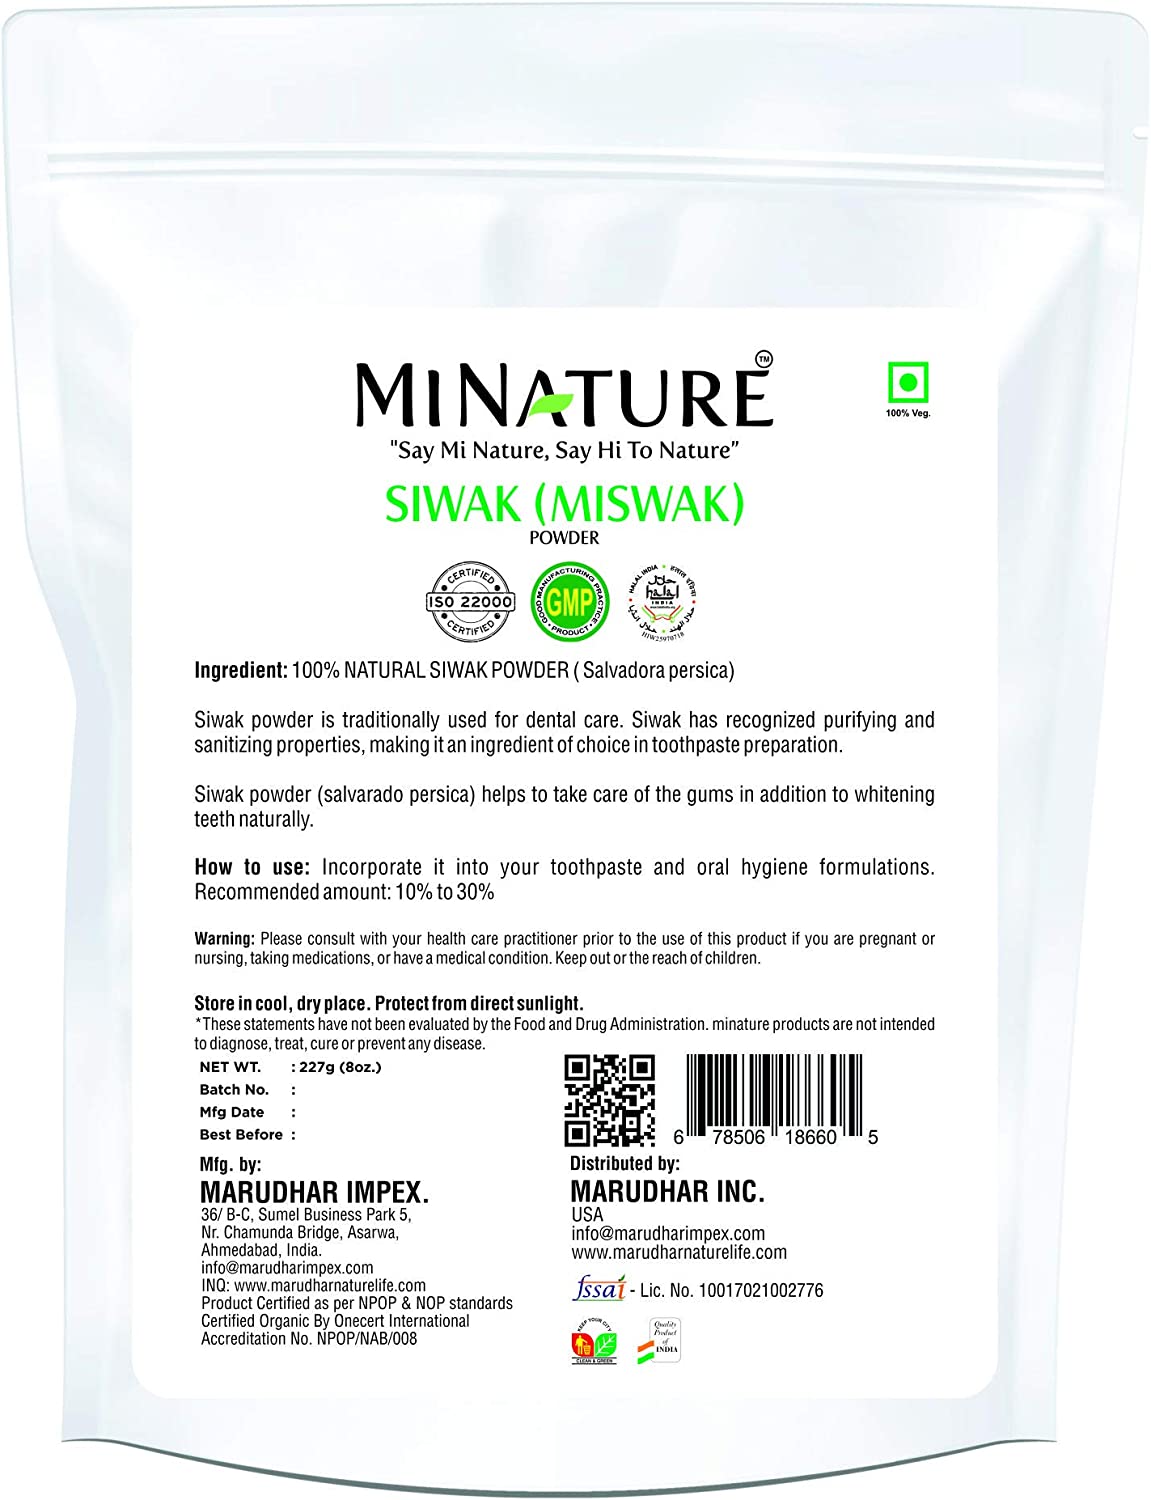 100% Natural Siwak Powder 227g (Miswak) - Tooth Powder